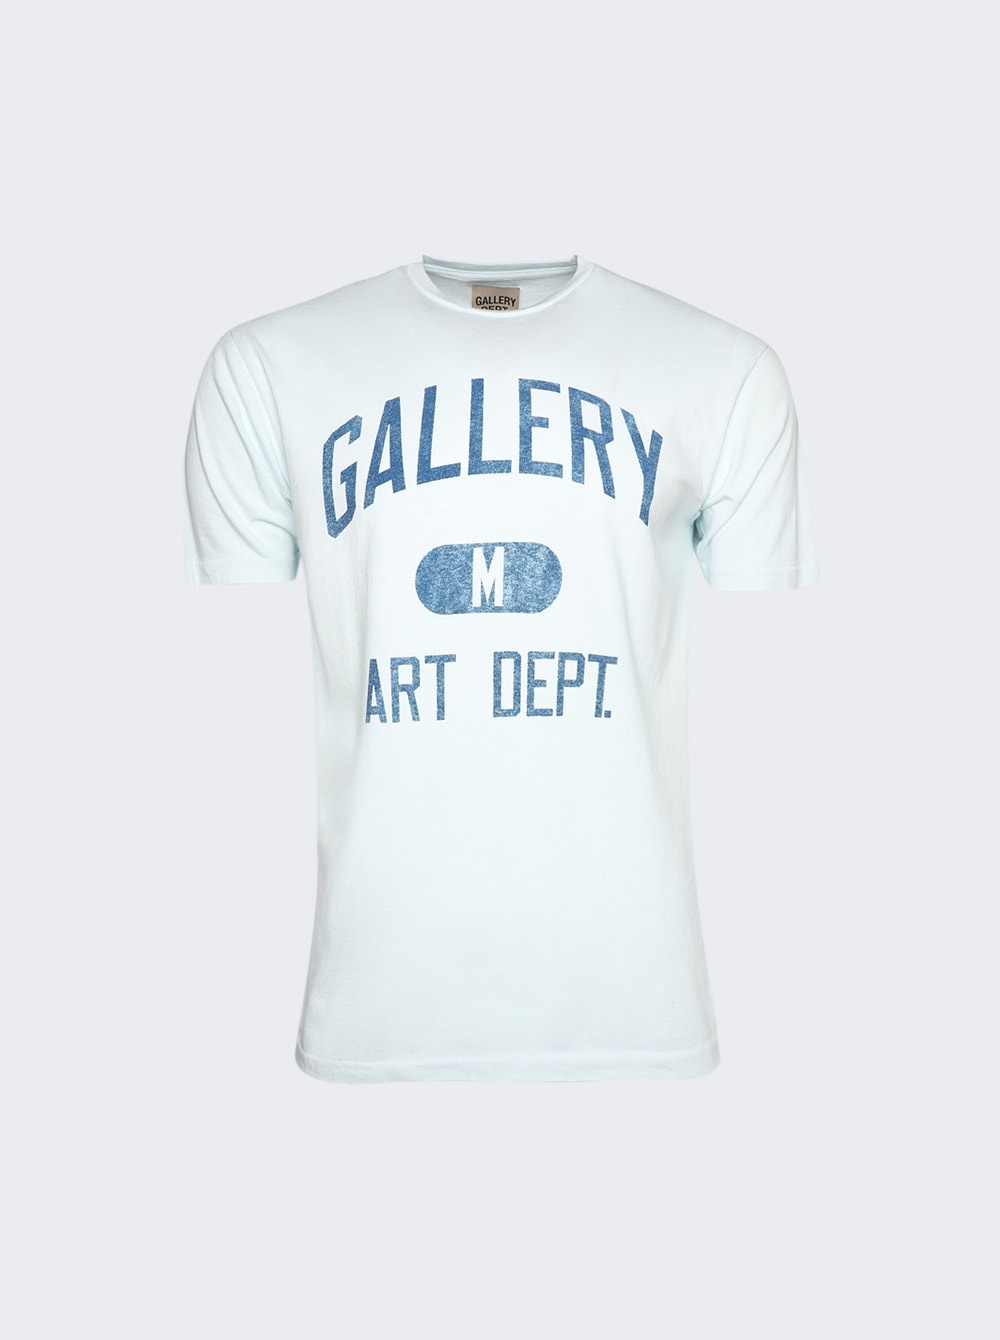 Art Dept. T-Shirt Light Blue - 1